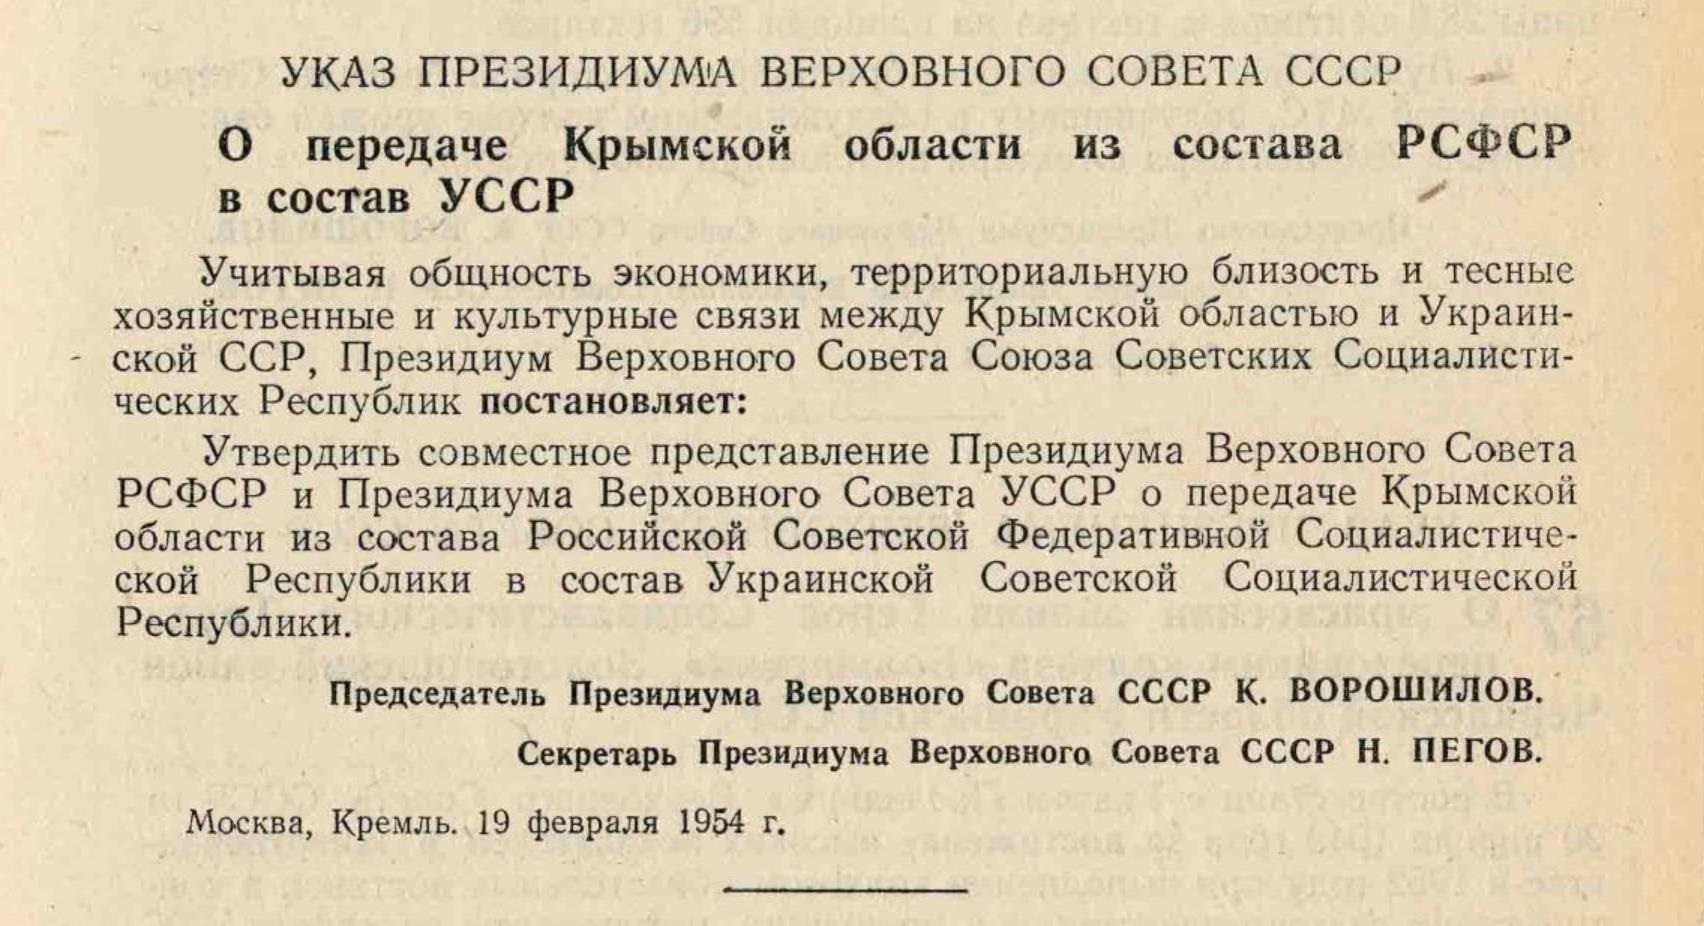 Передача украинских территорий России в 1954 г. это миф, — историк Громенко